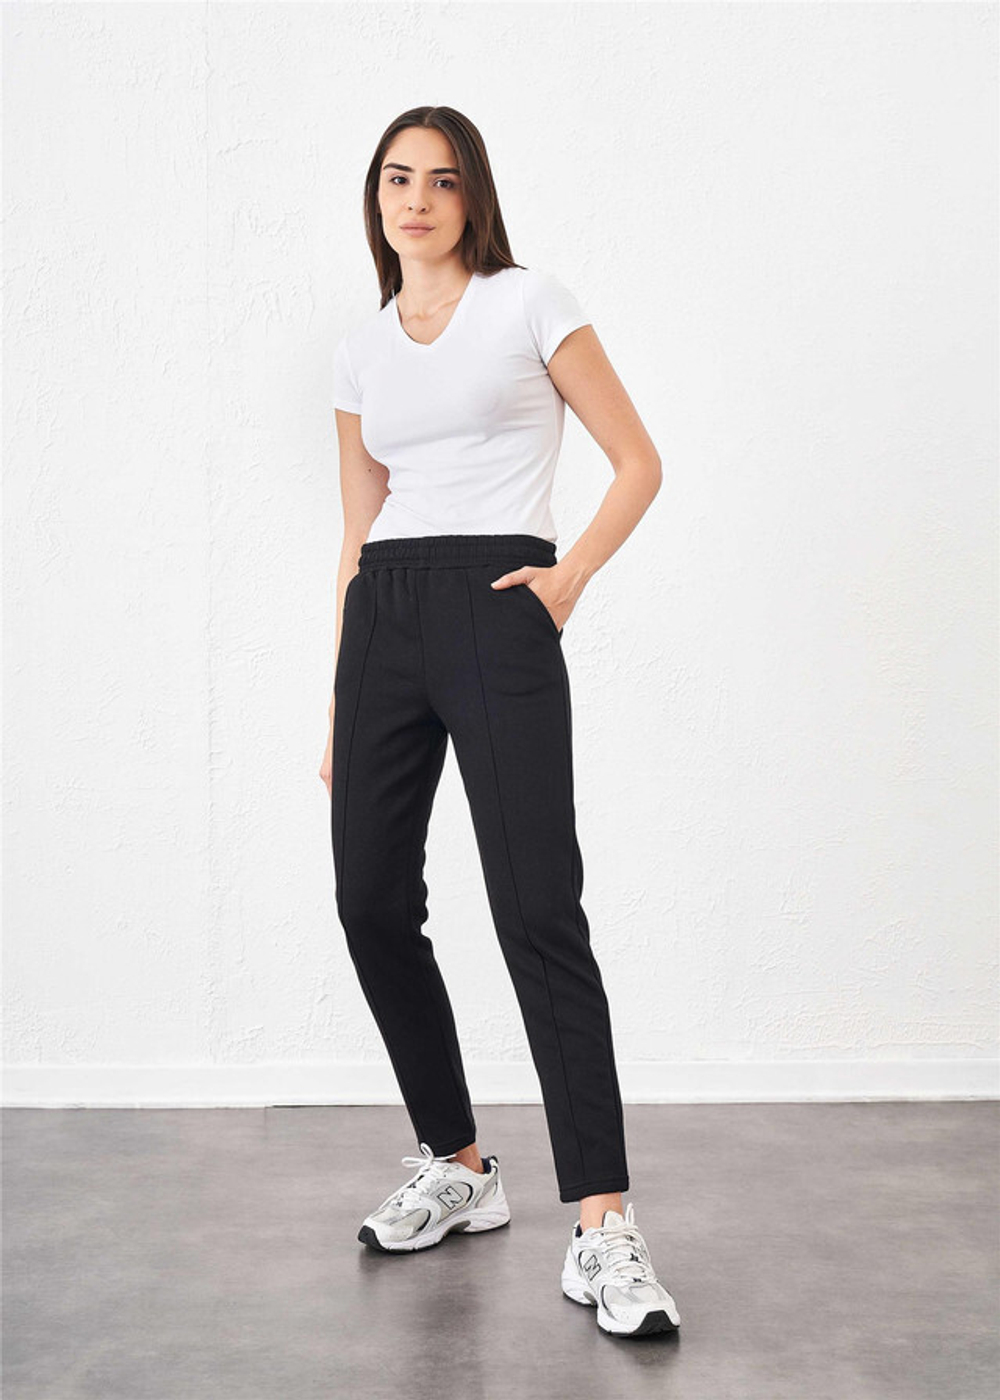 RELAX MODE / Спортивные штаны женские утепленные штаны женские с начесом - 40118